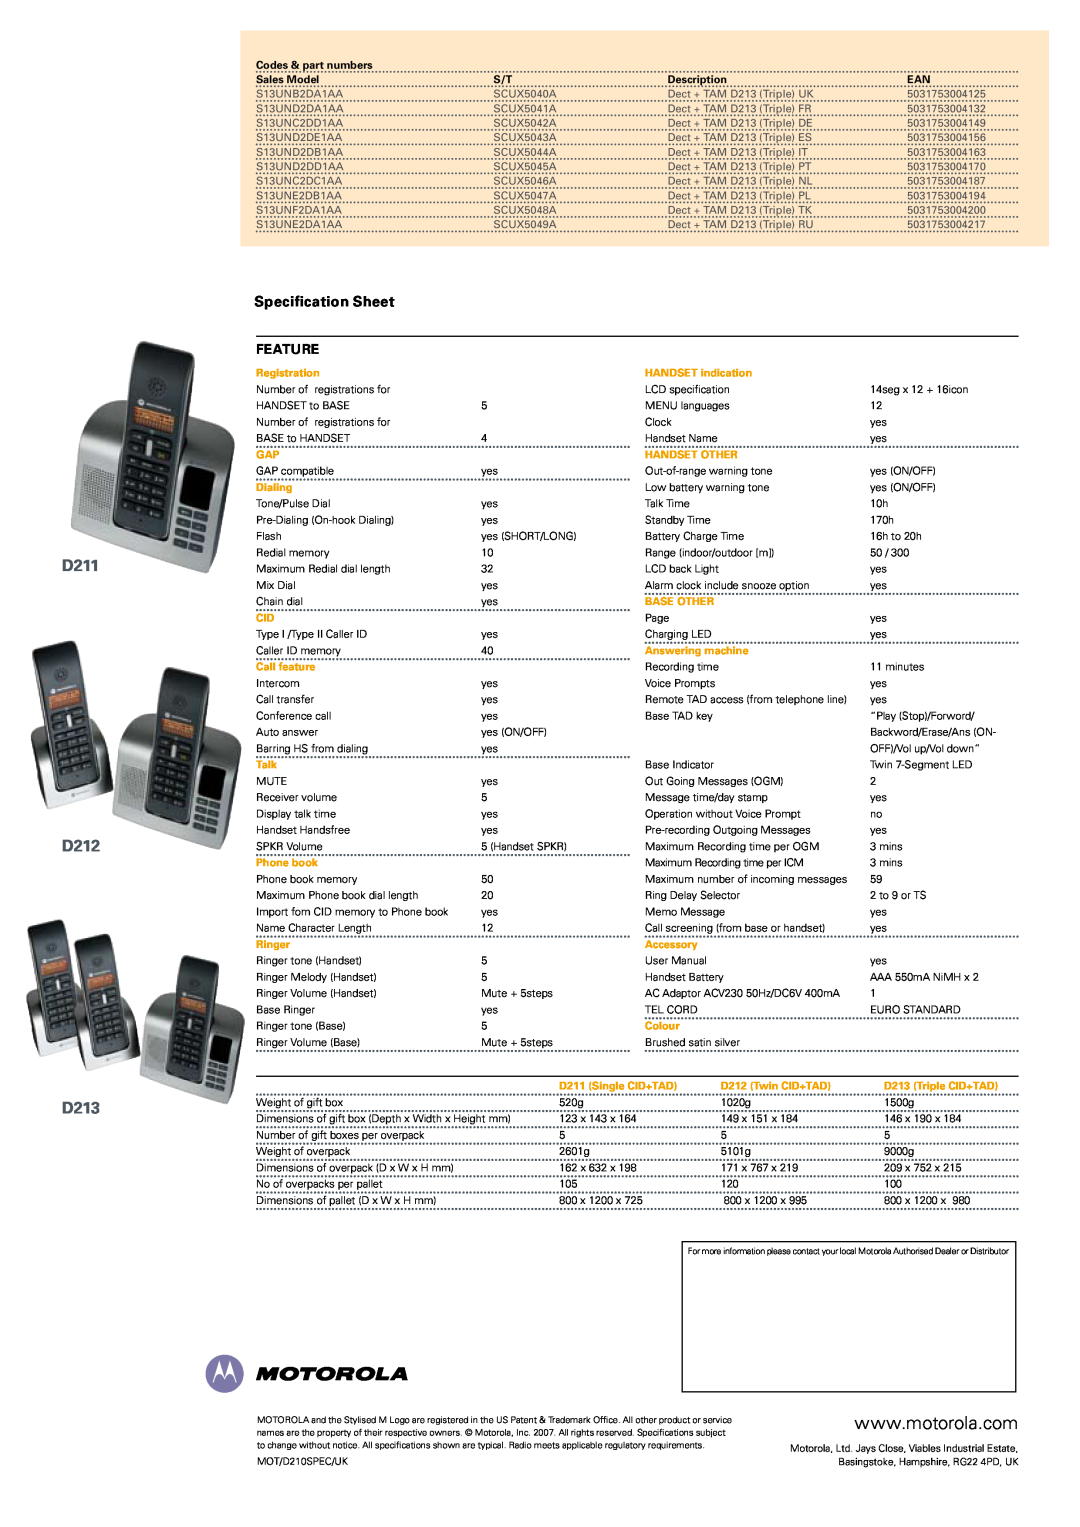 Motorola D210 specifications D211 D212 D213, Specification Sheet, Feature, Codes & part numbers, Sales Model, Description 